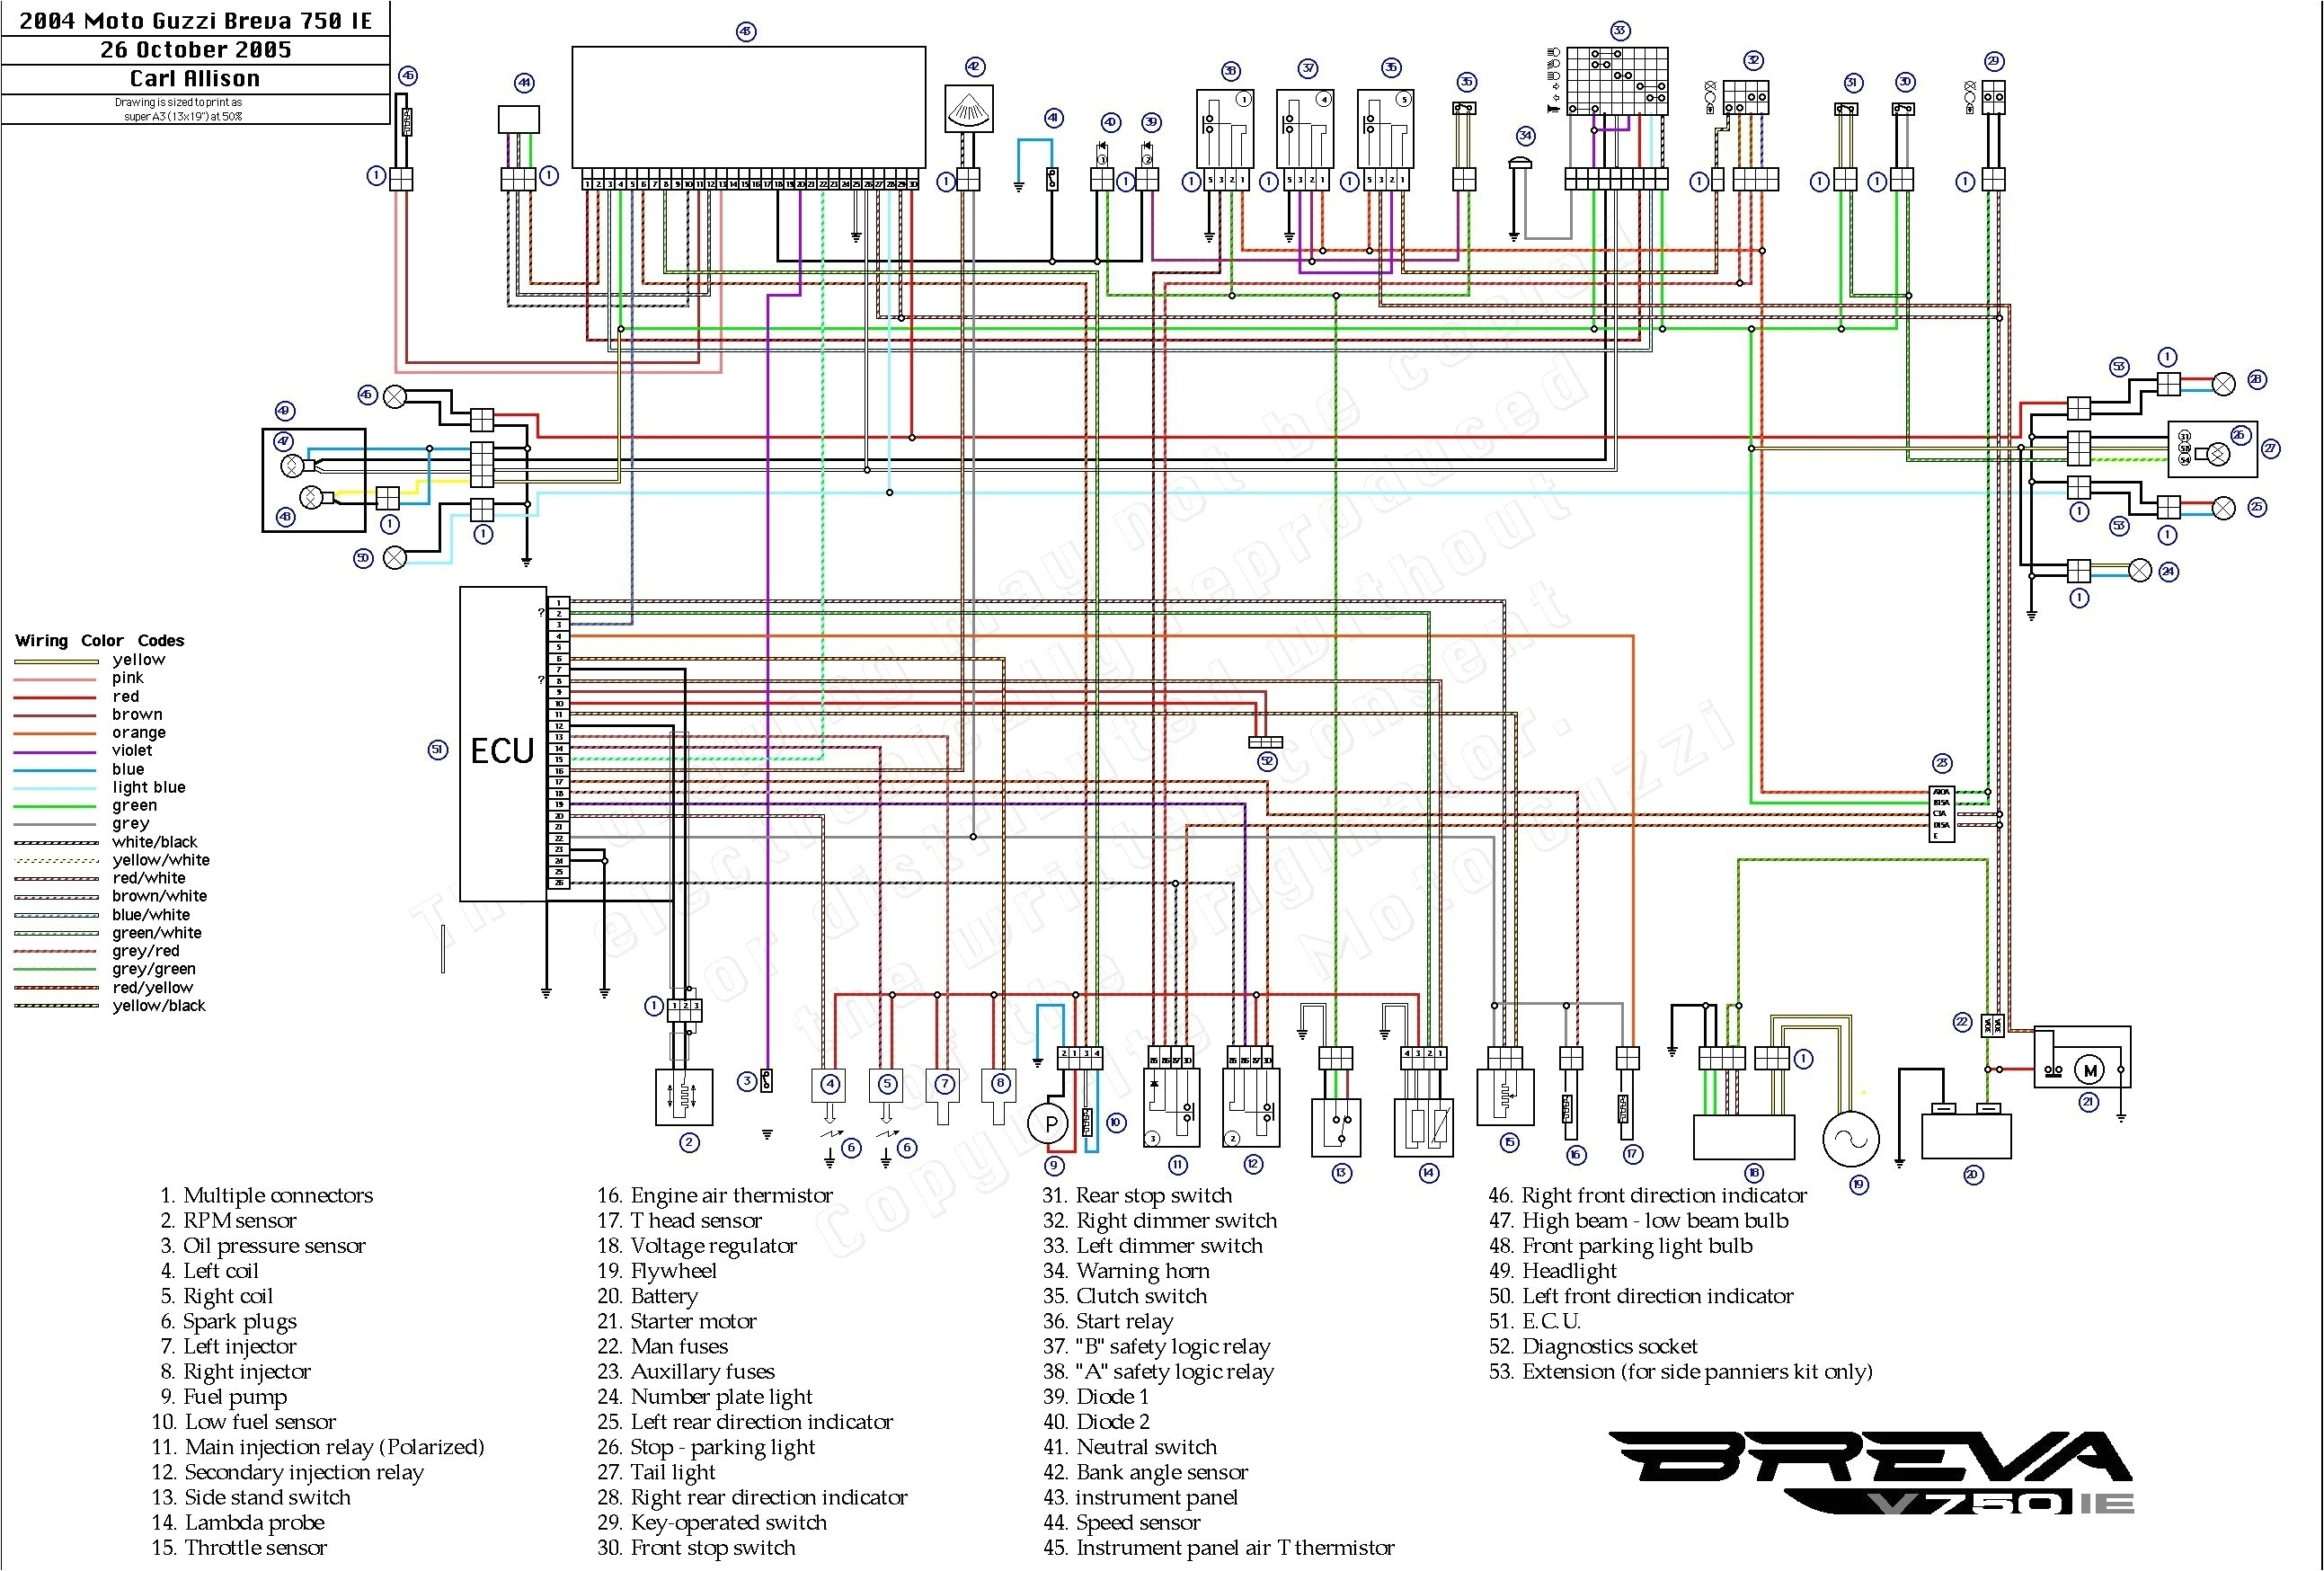 ac wiring problem dodge intrepid wiring diagram 2004 dodge intrepid headlight wiring diagram wiring diagram view